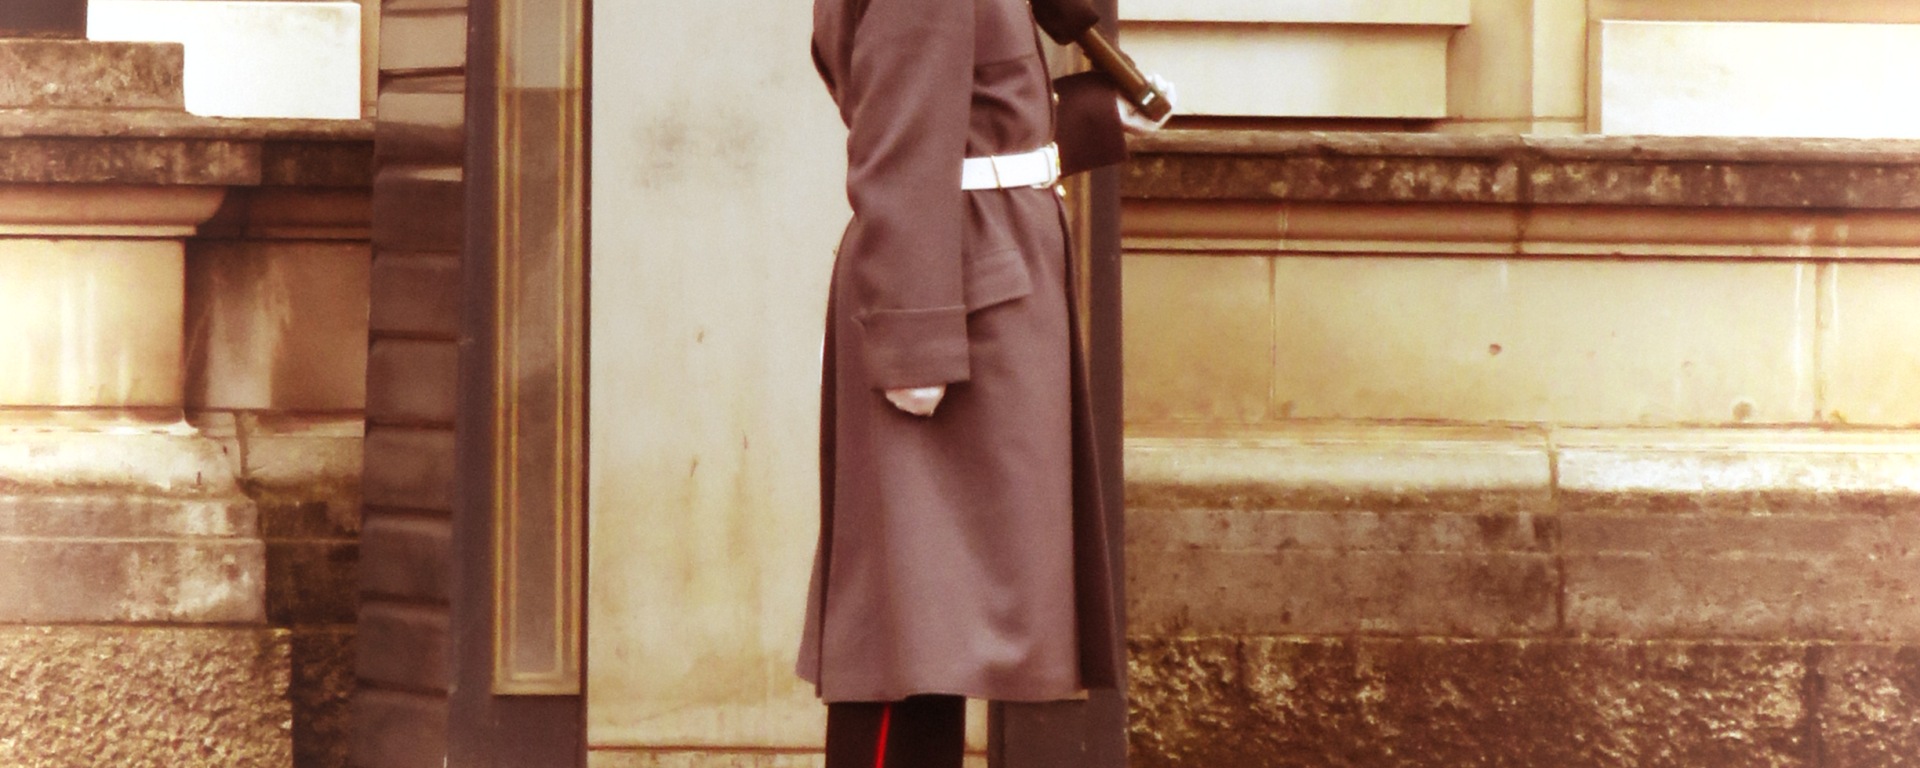 Buckingham Palace Guard - London, England, United Kingdom - by Anika Mikkelson - Miss Maps